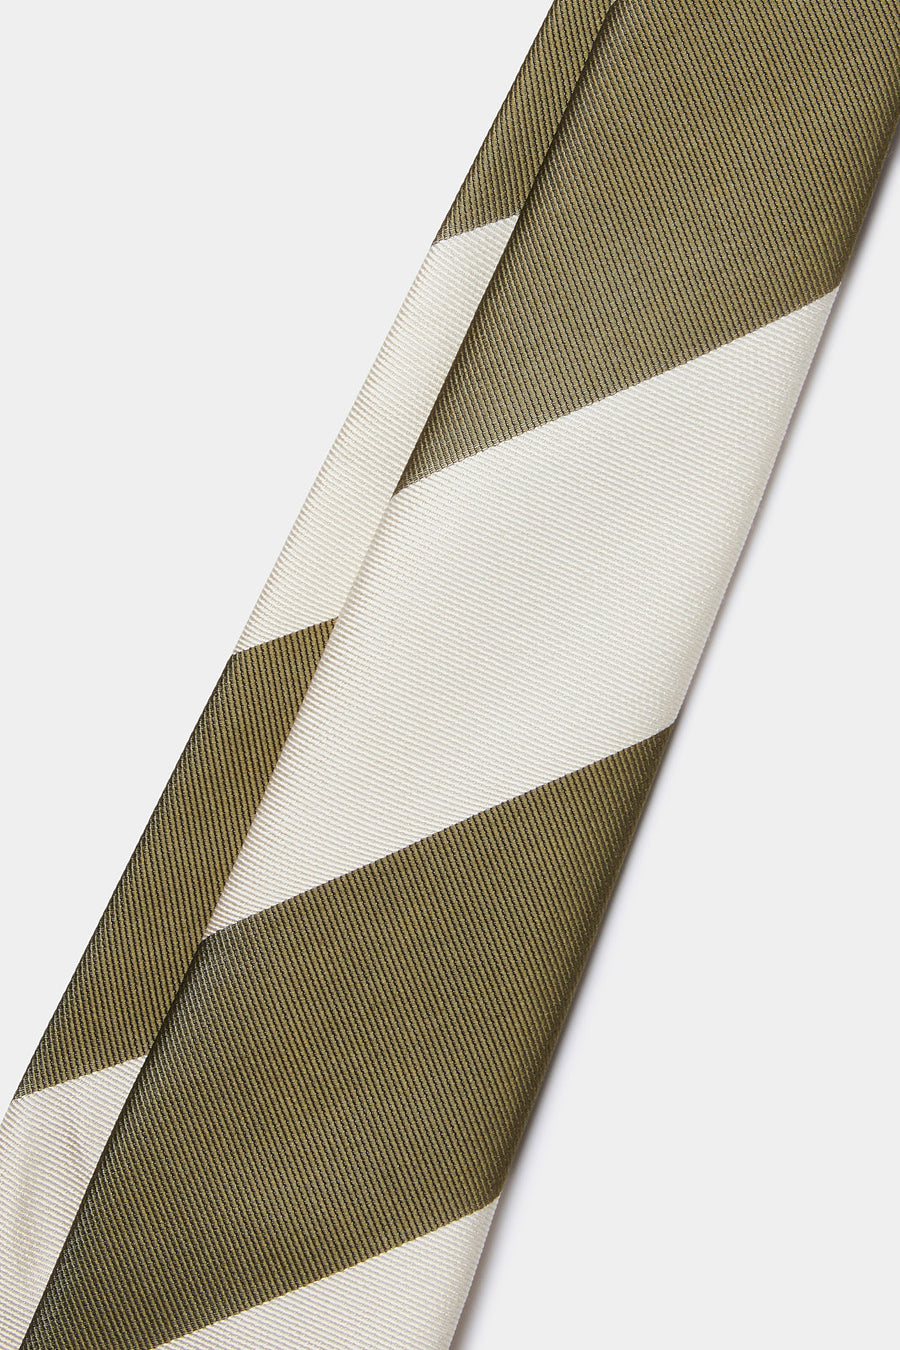 Silk Striped Tie in Winter Moss